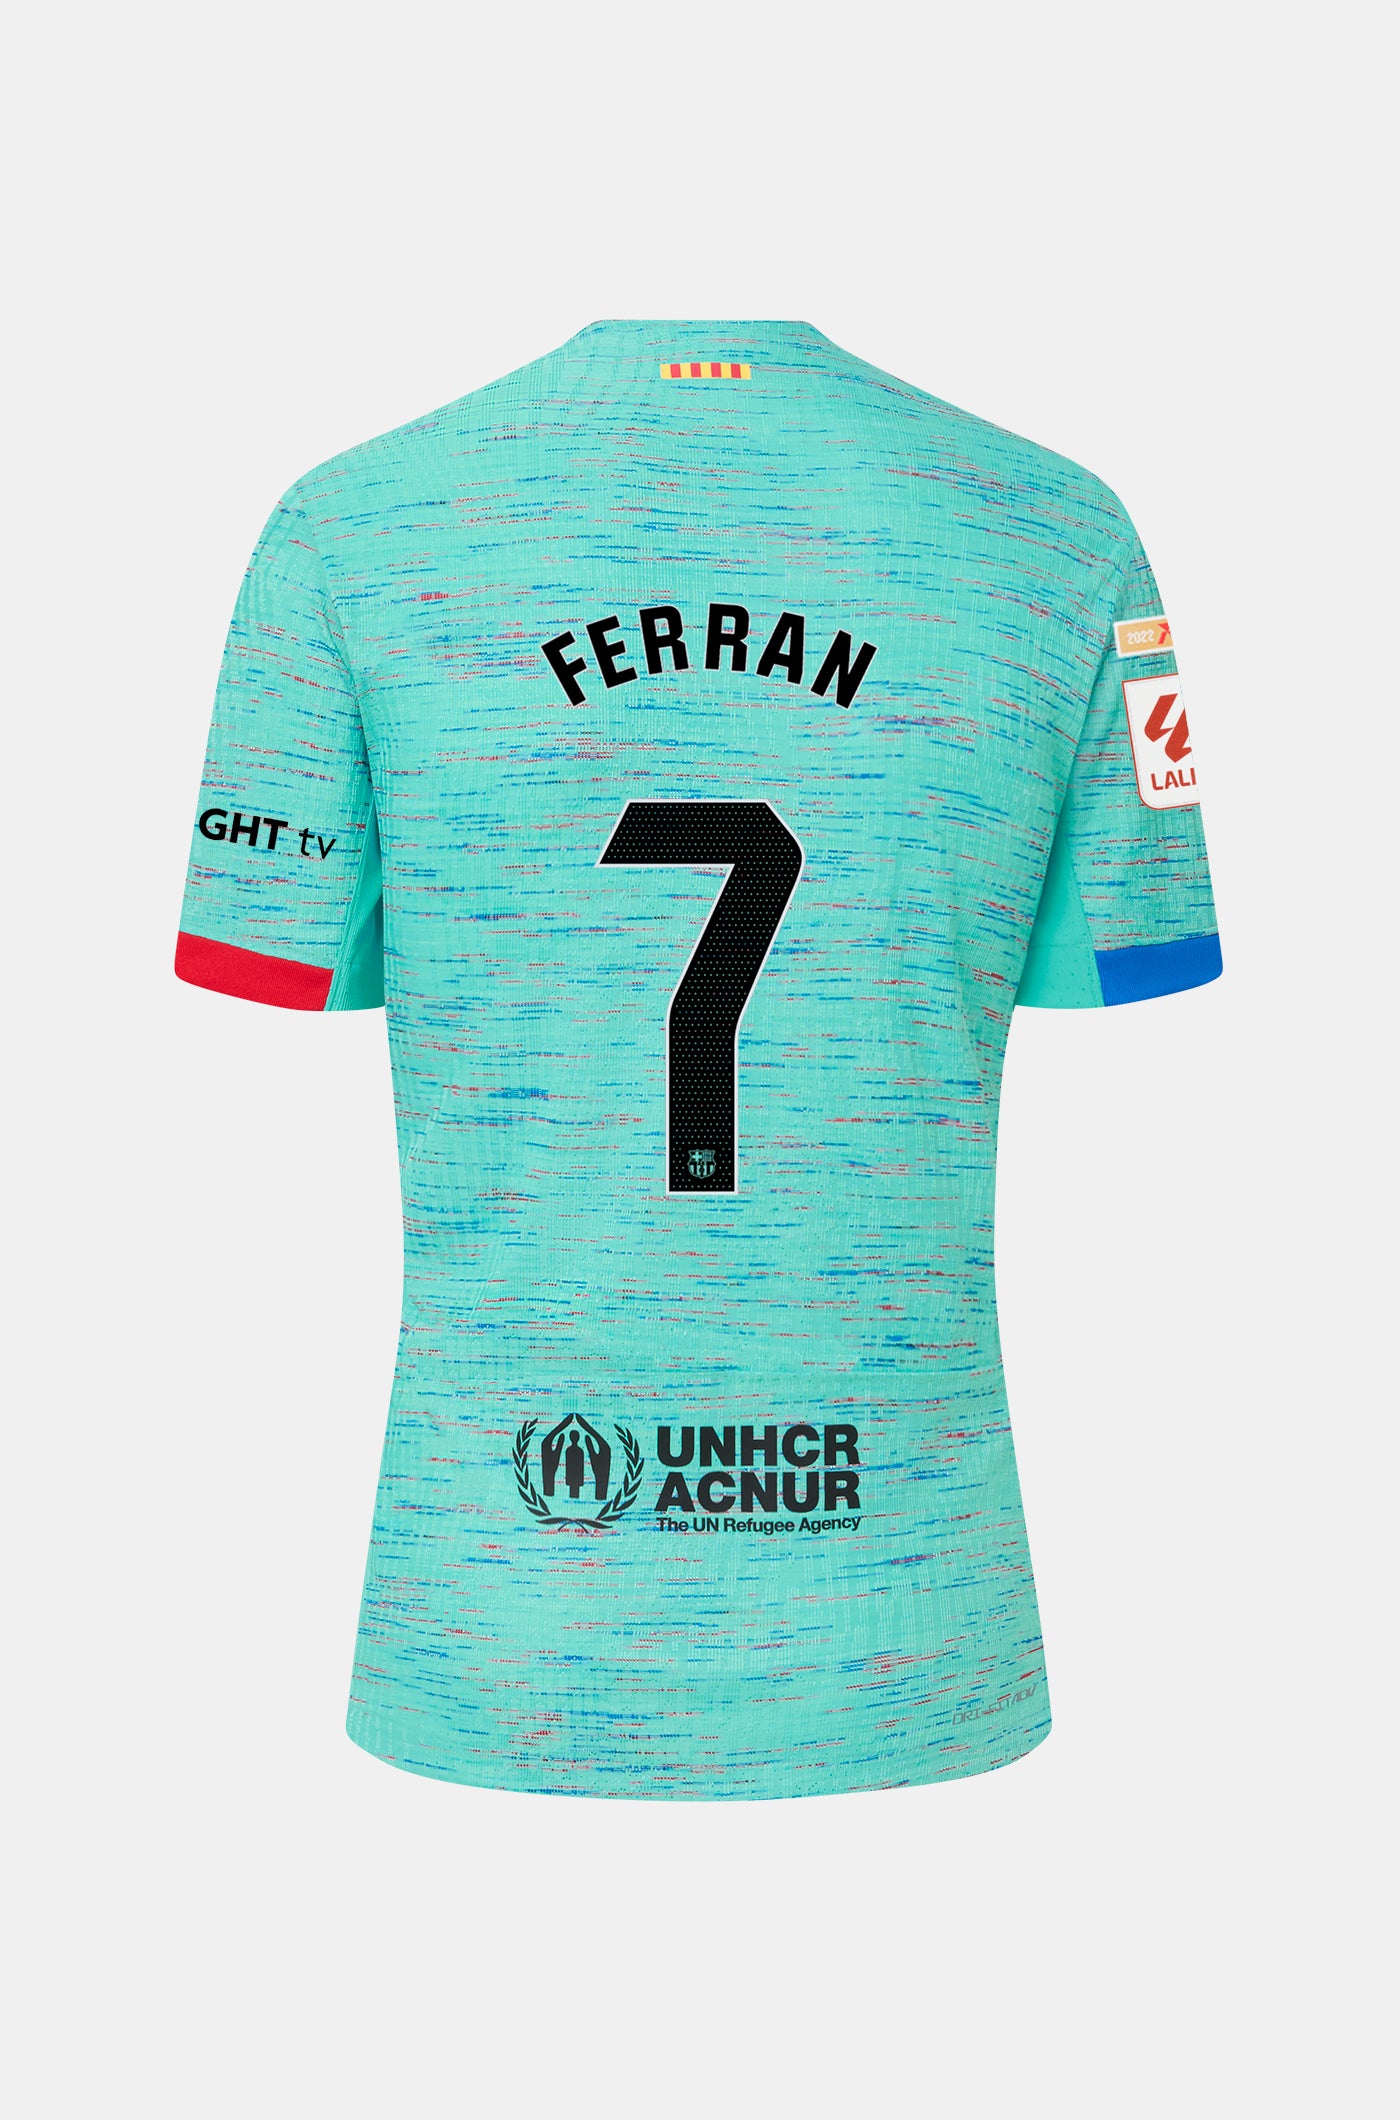 LFP FC Barcelona third shirt 23/24 Player’s Edition  - FERRAN